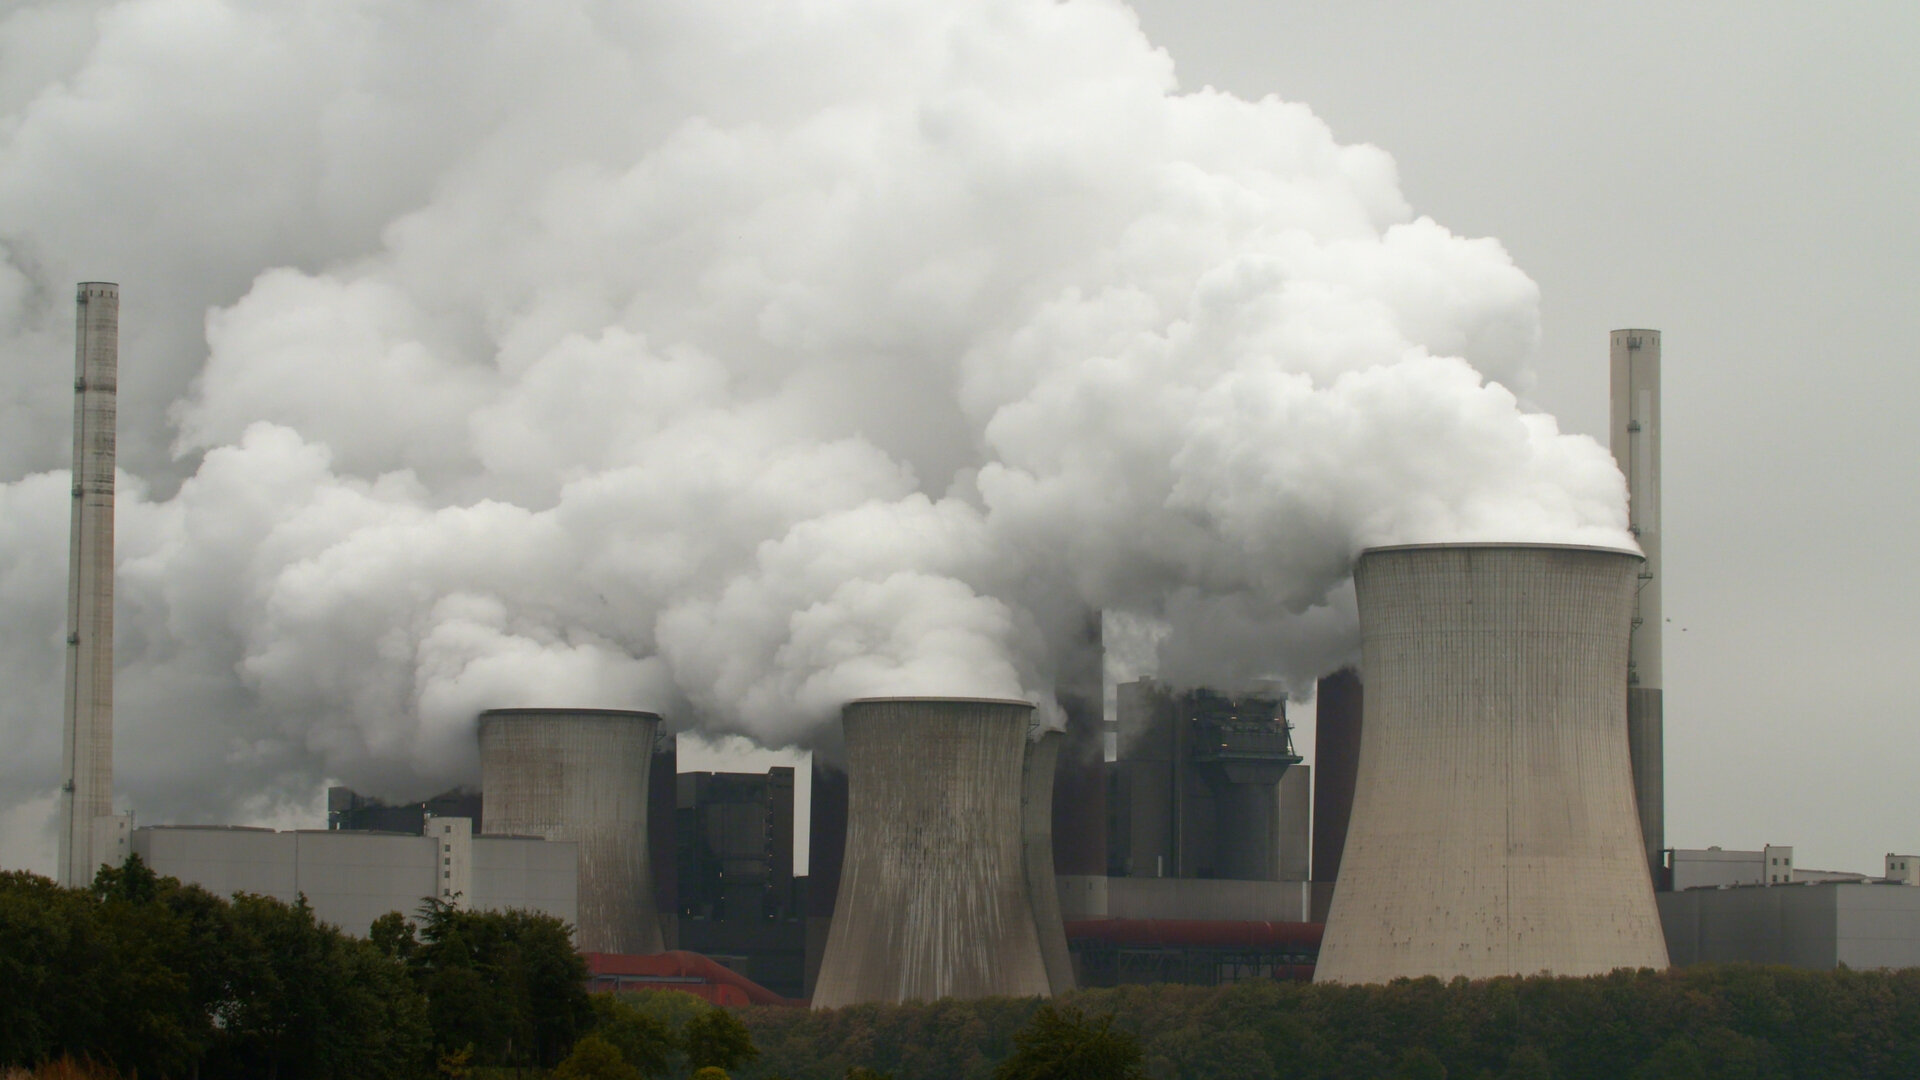 Déchets radioactifs et risques d'accidents mortels, mais aussi production d'énergie sans CO2 : le nucléaire a des avantages et des inconvénients